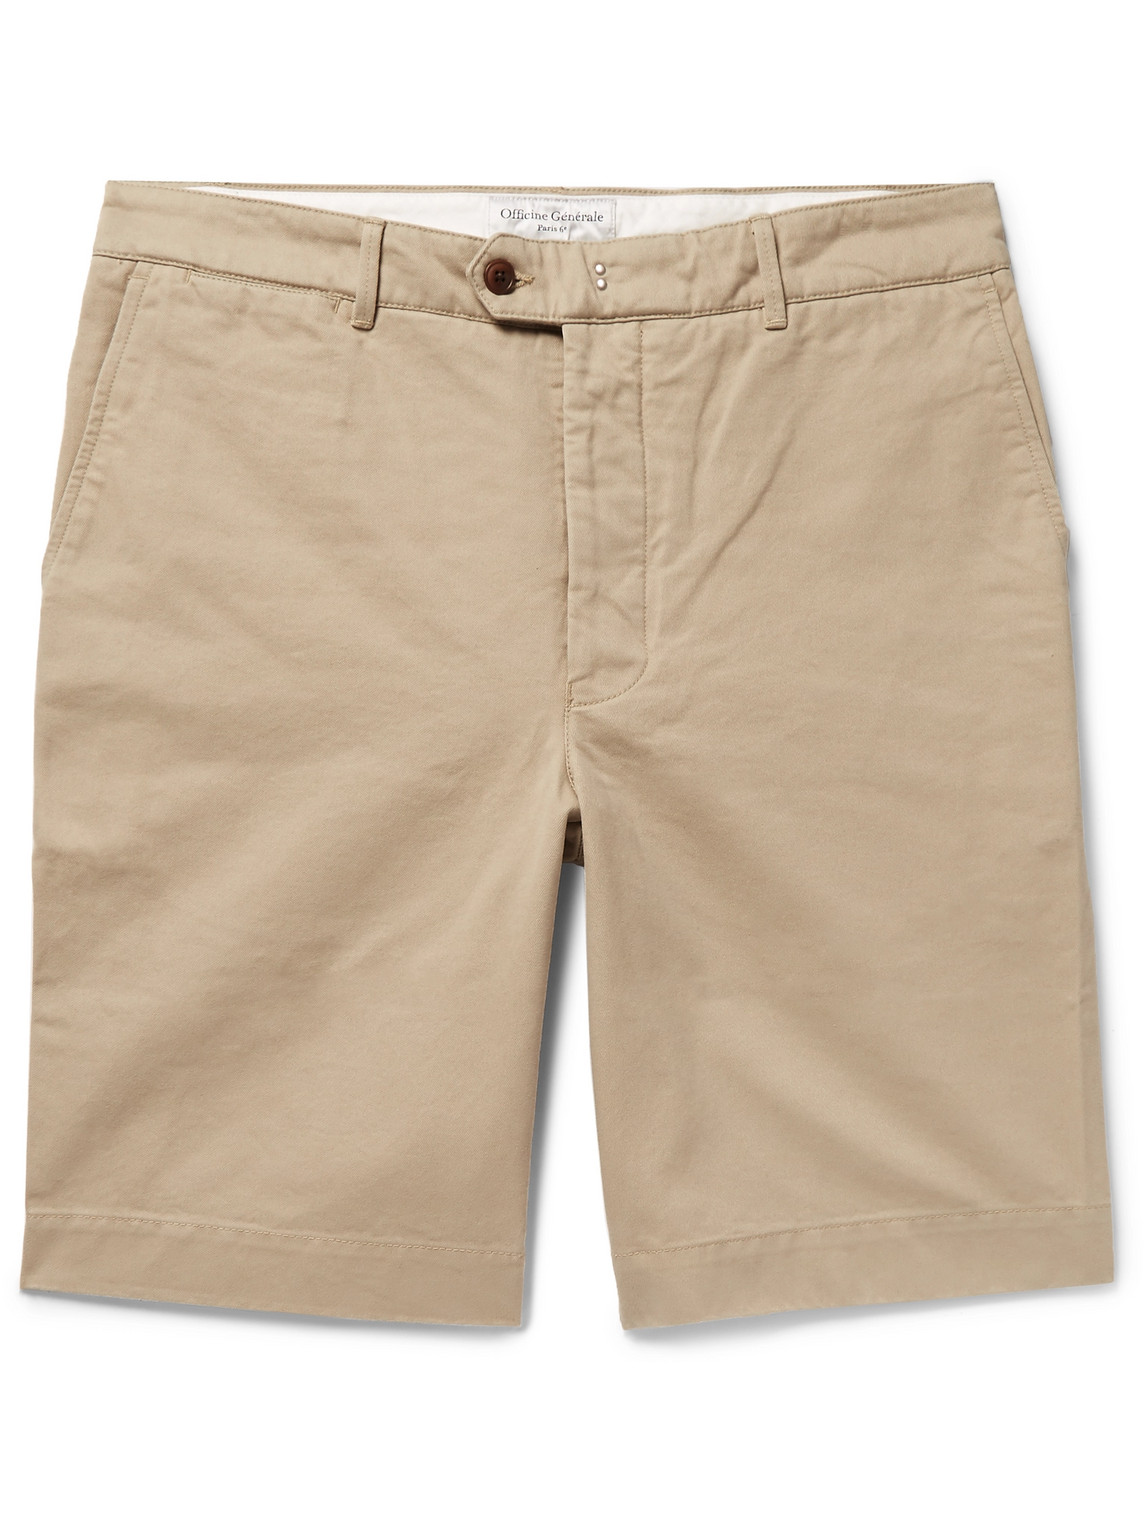 Officine Générale - Fisherman Cotton-Twill Shorts - Men - Neutrals - UK/US 29 von Officine Générale